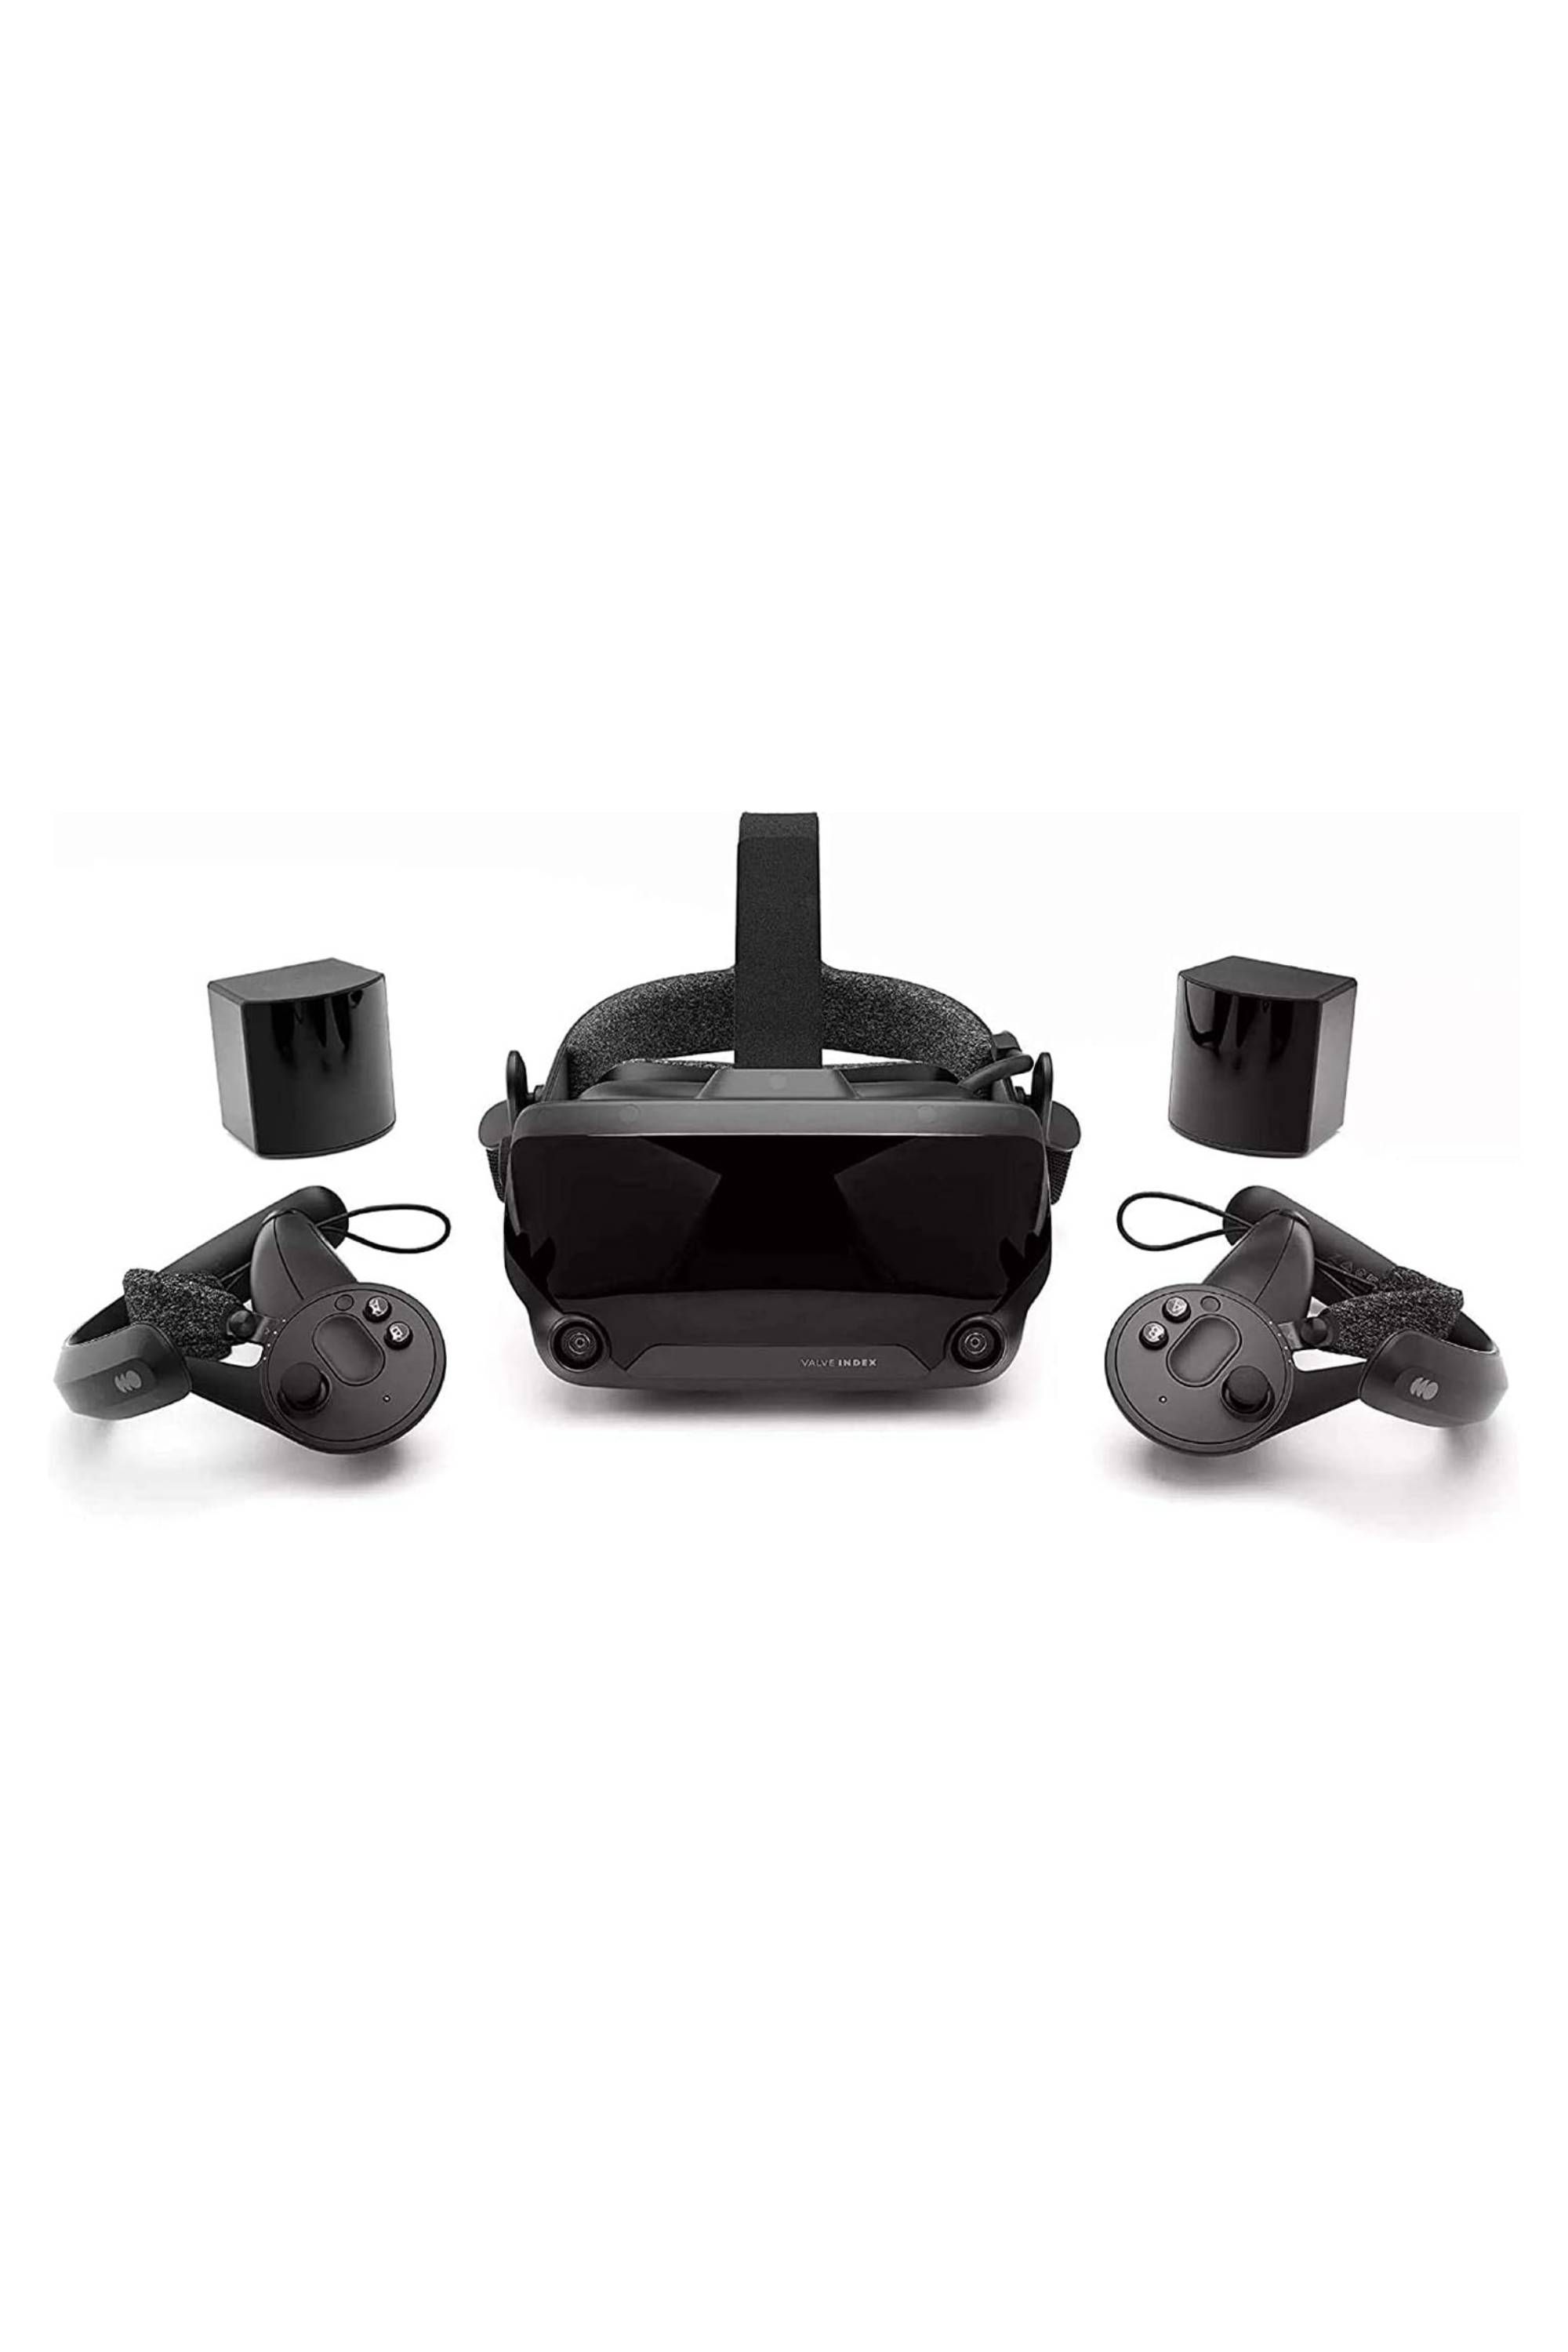 Valve Index vs HTC Vive Pro vs Oculus Rift S: the VR headset showdown